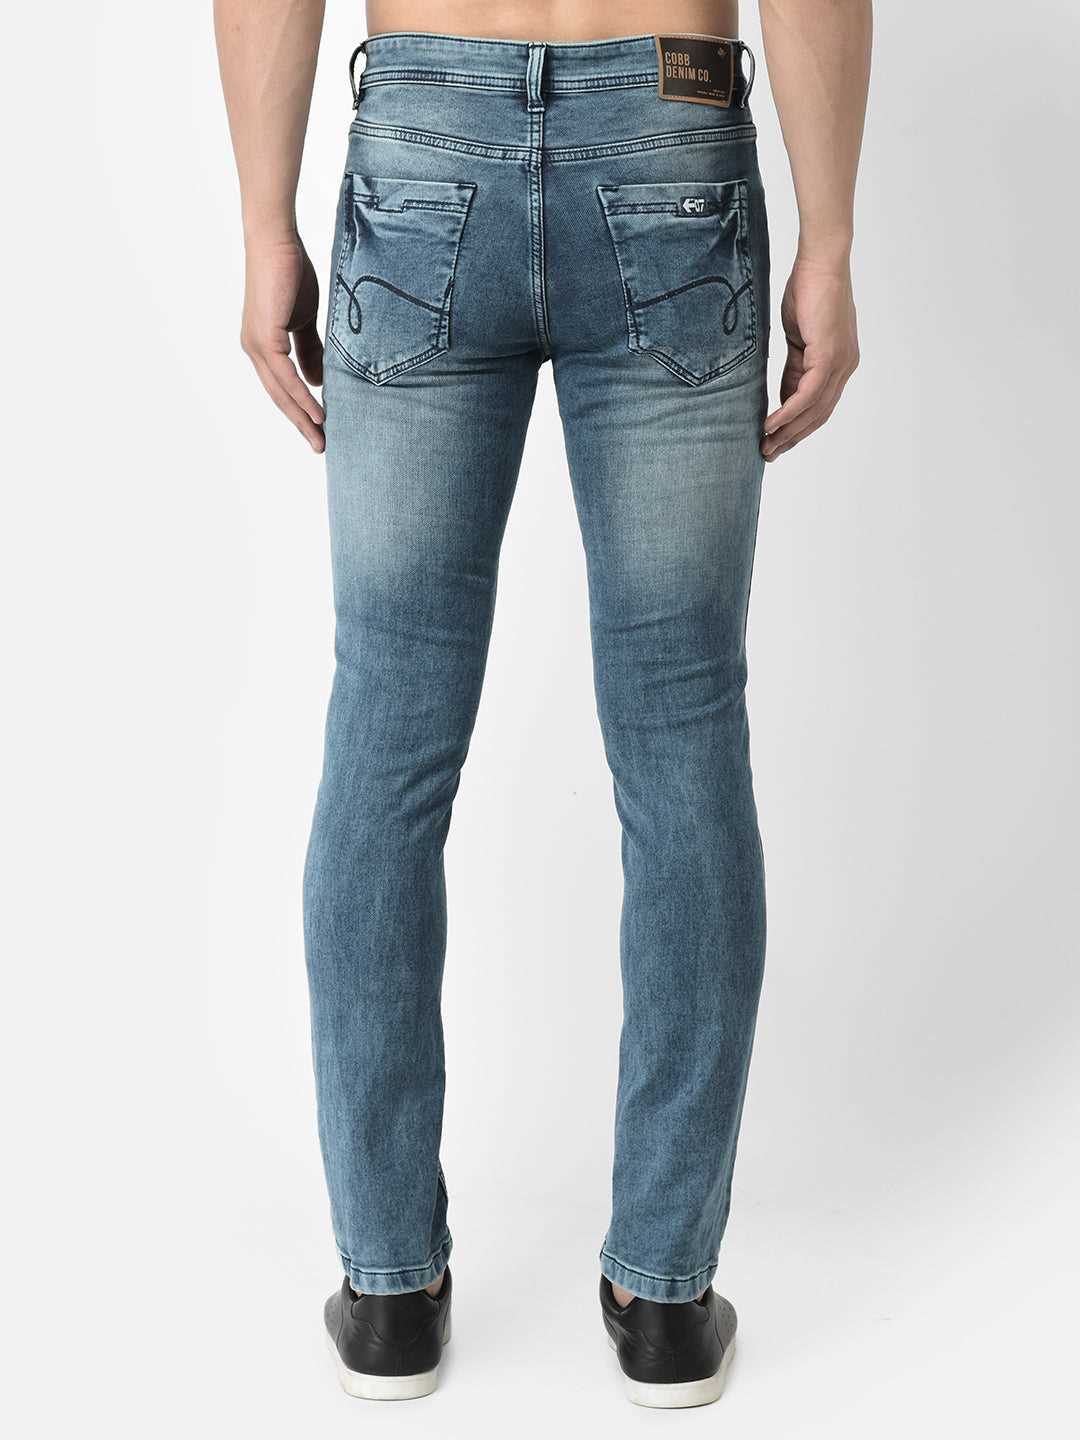 Shop the Cobb Narrow Fit Jeans